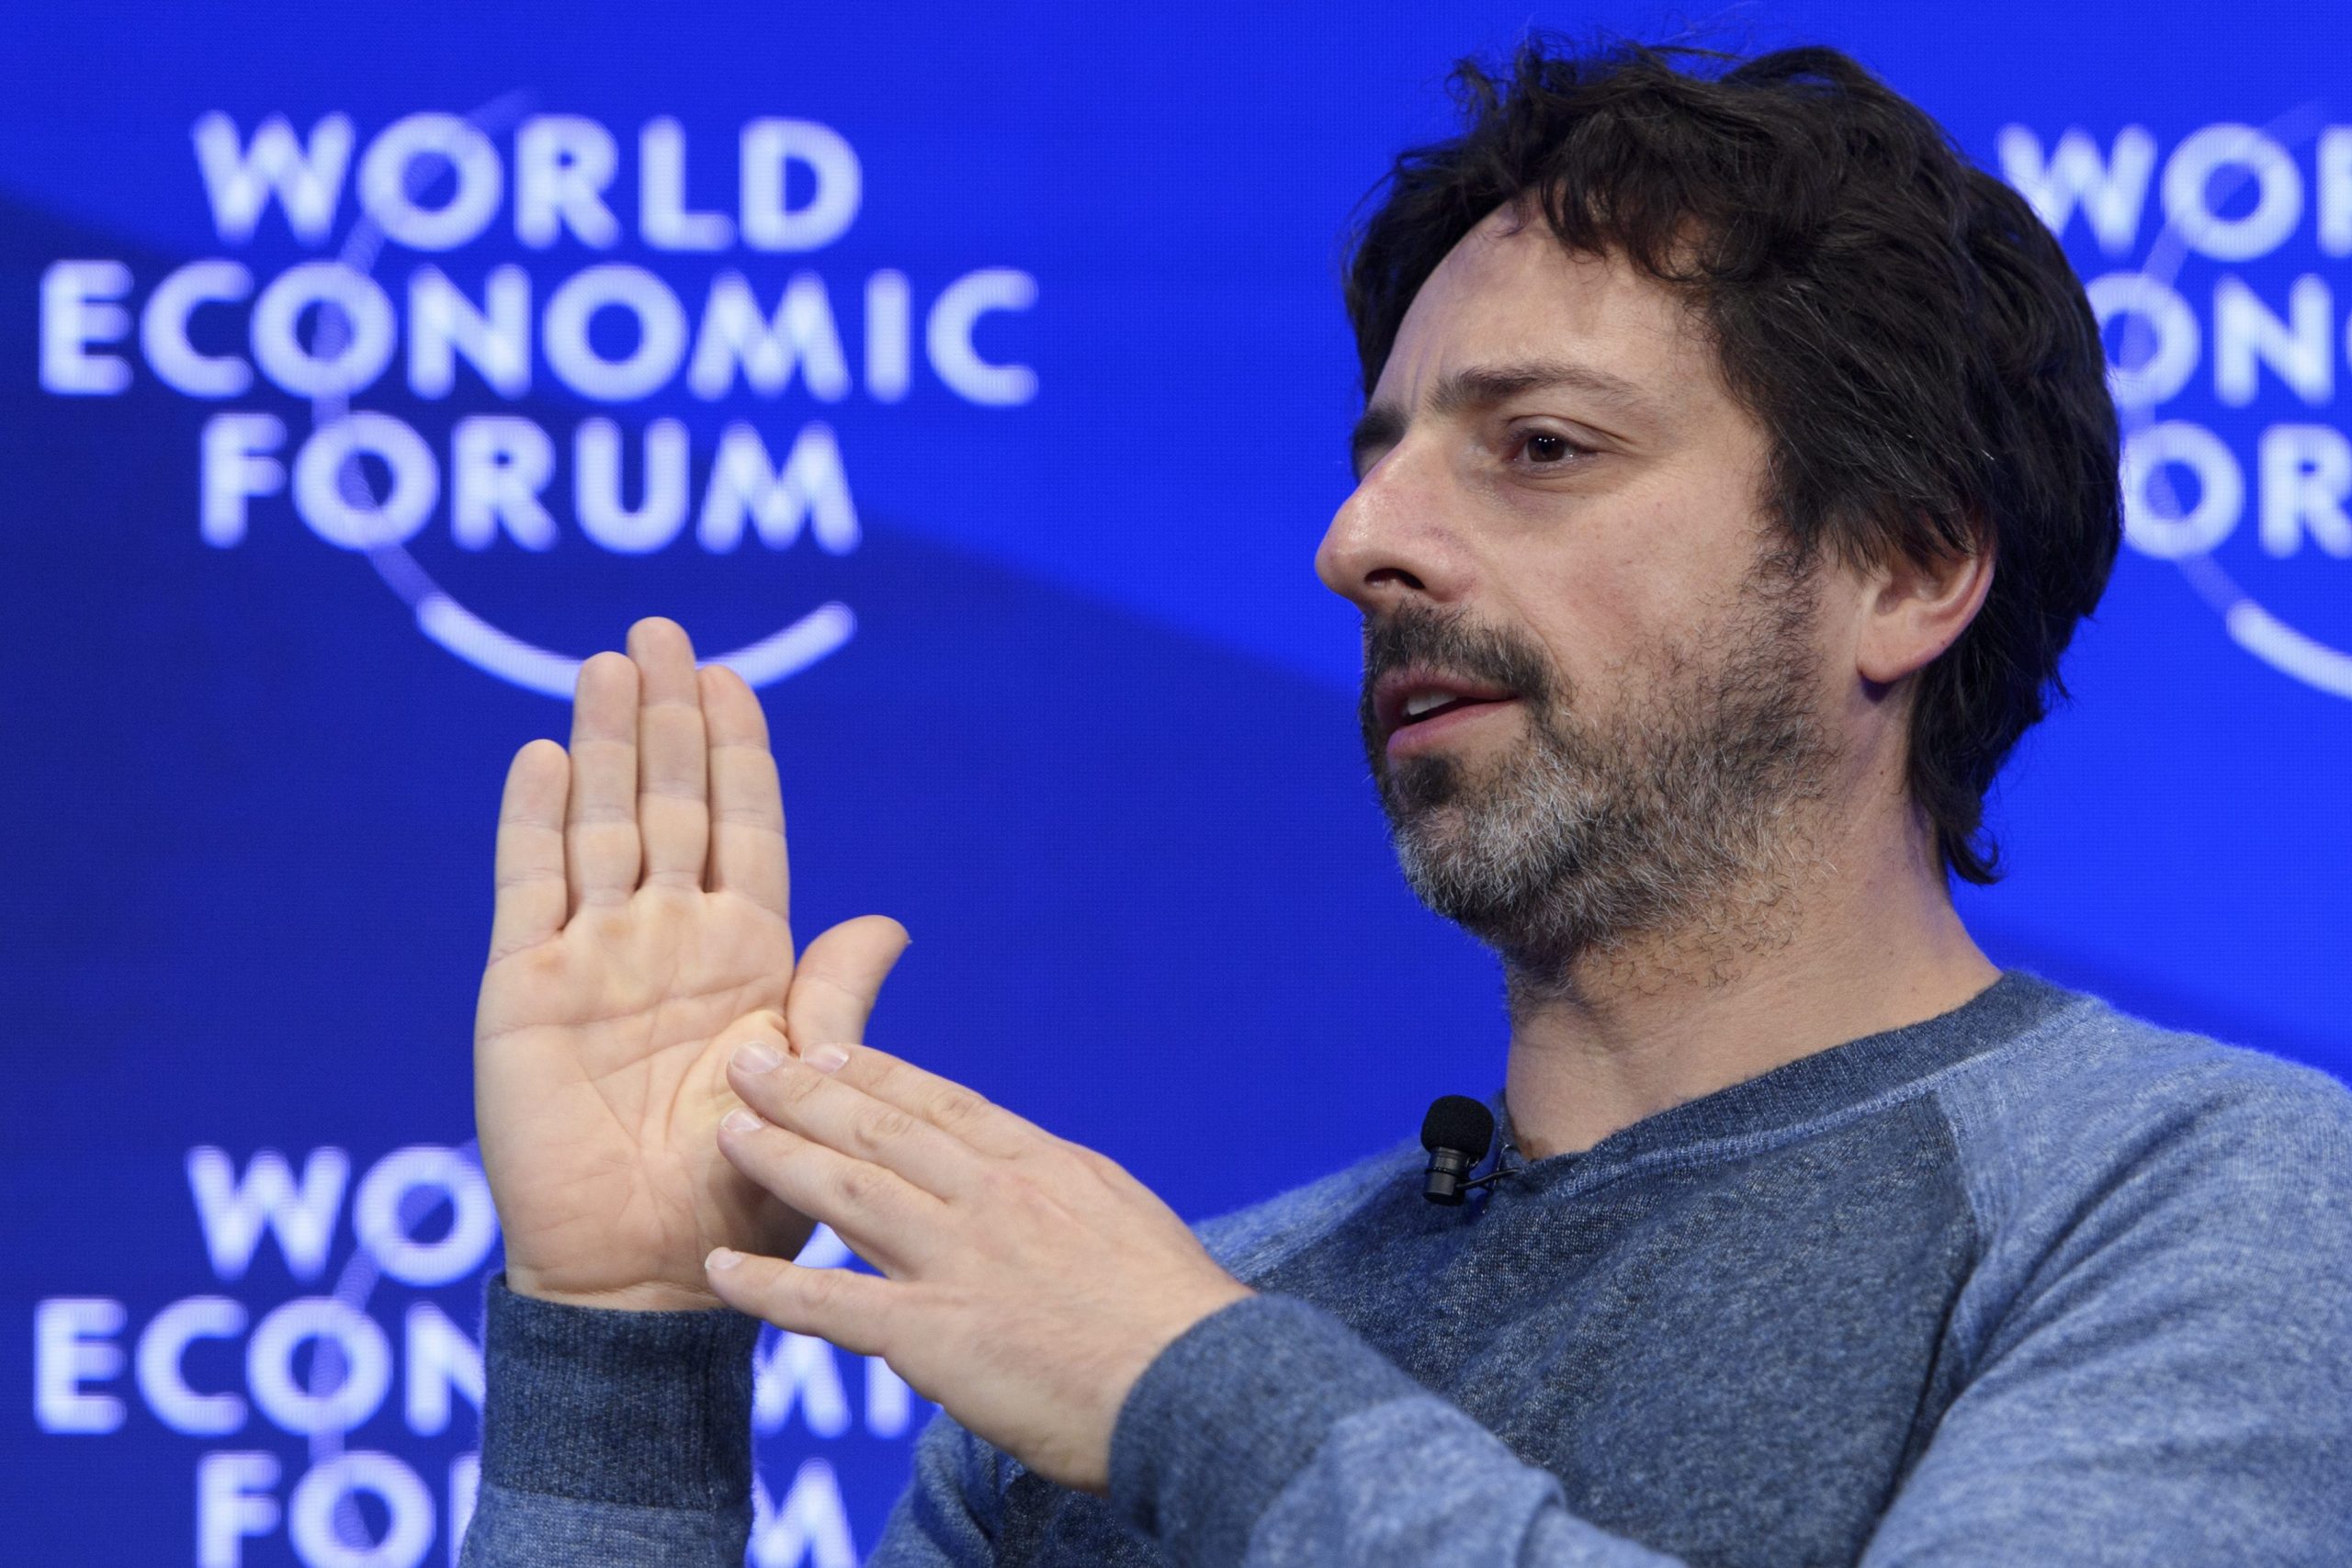 Medeoprichter Sergey Brin van Google op het World Economic Forum in Davos in 2017. Foto: EPA/Laurent Gillieron